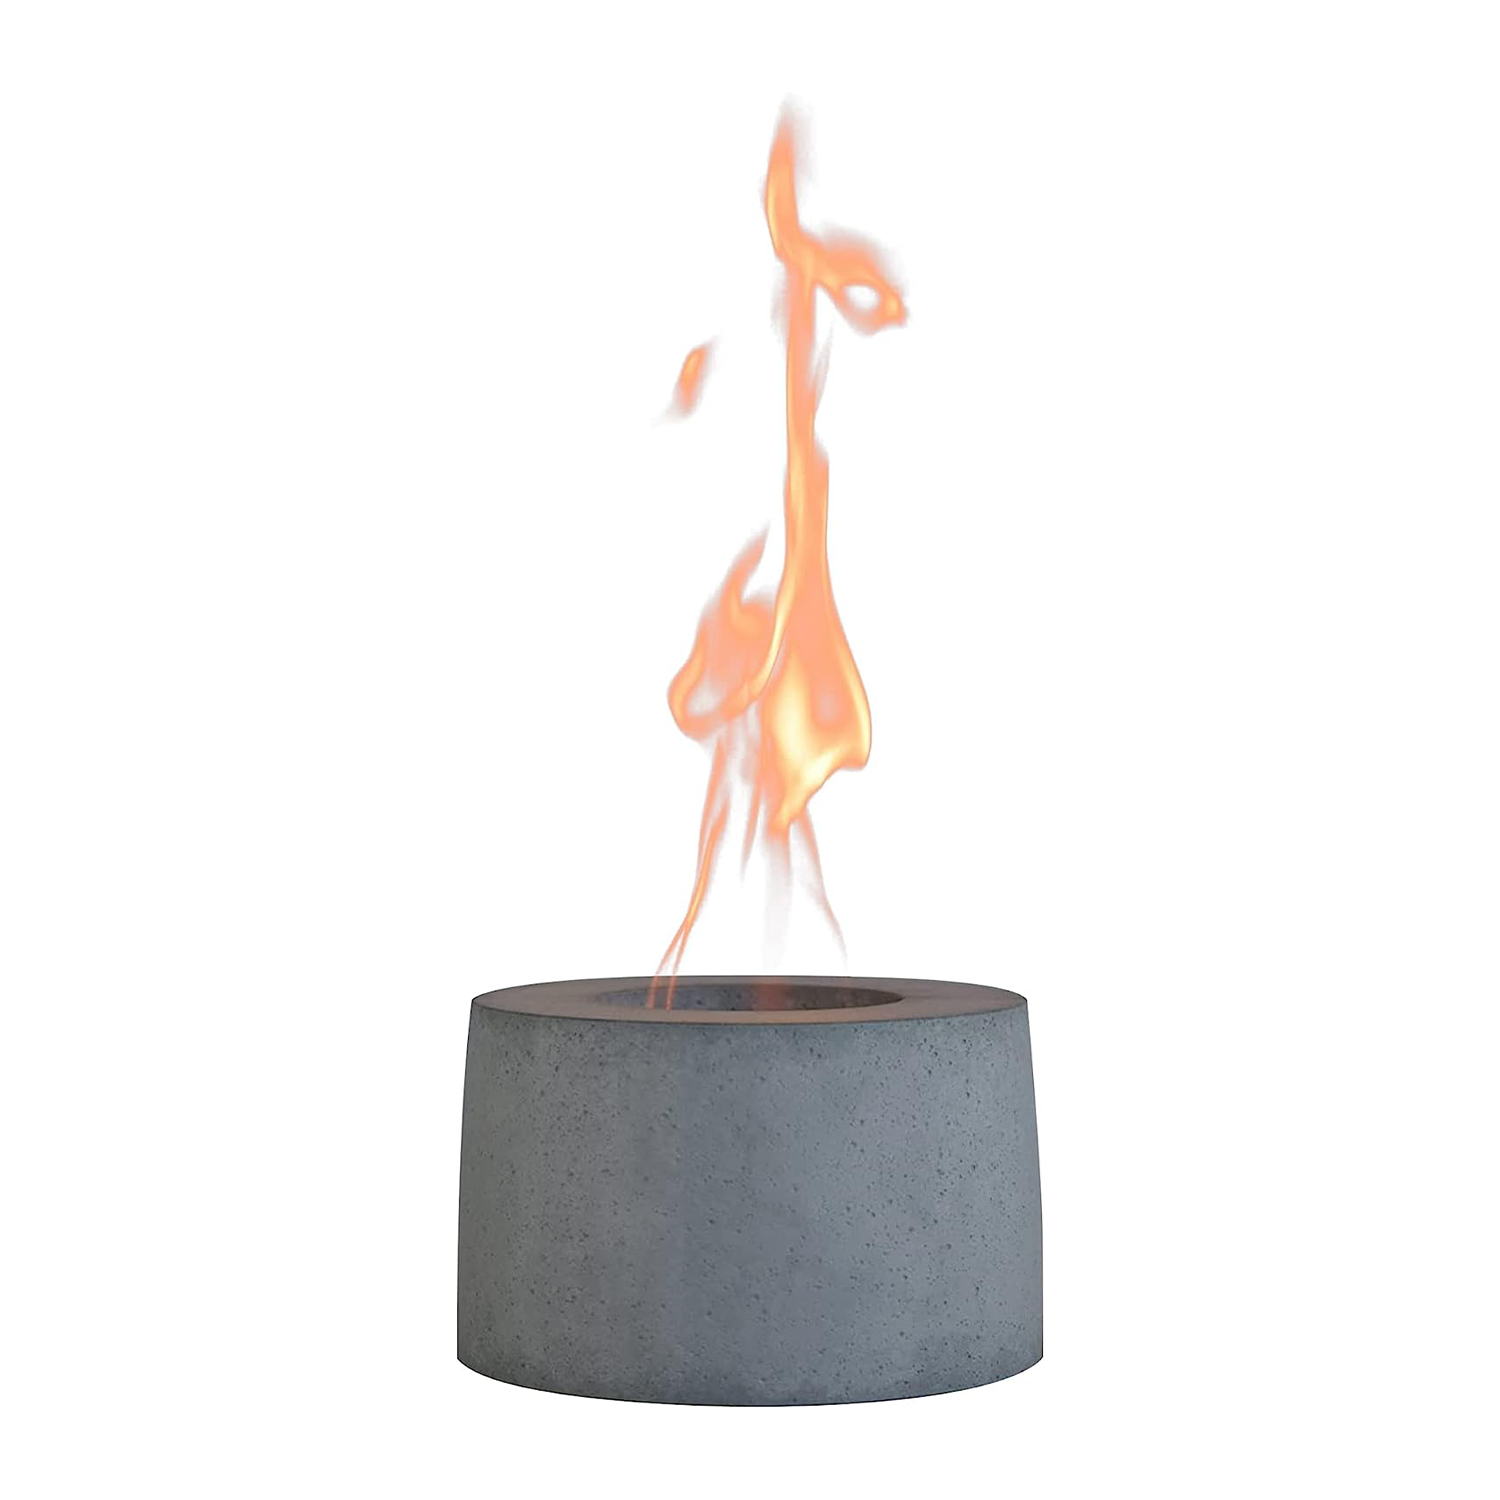 Colsen tabletop firepit